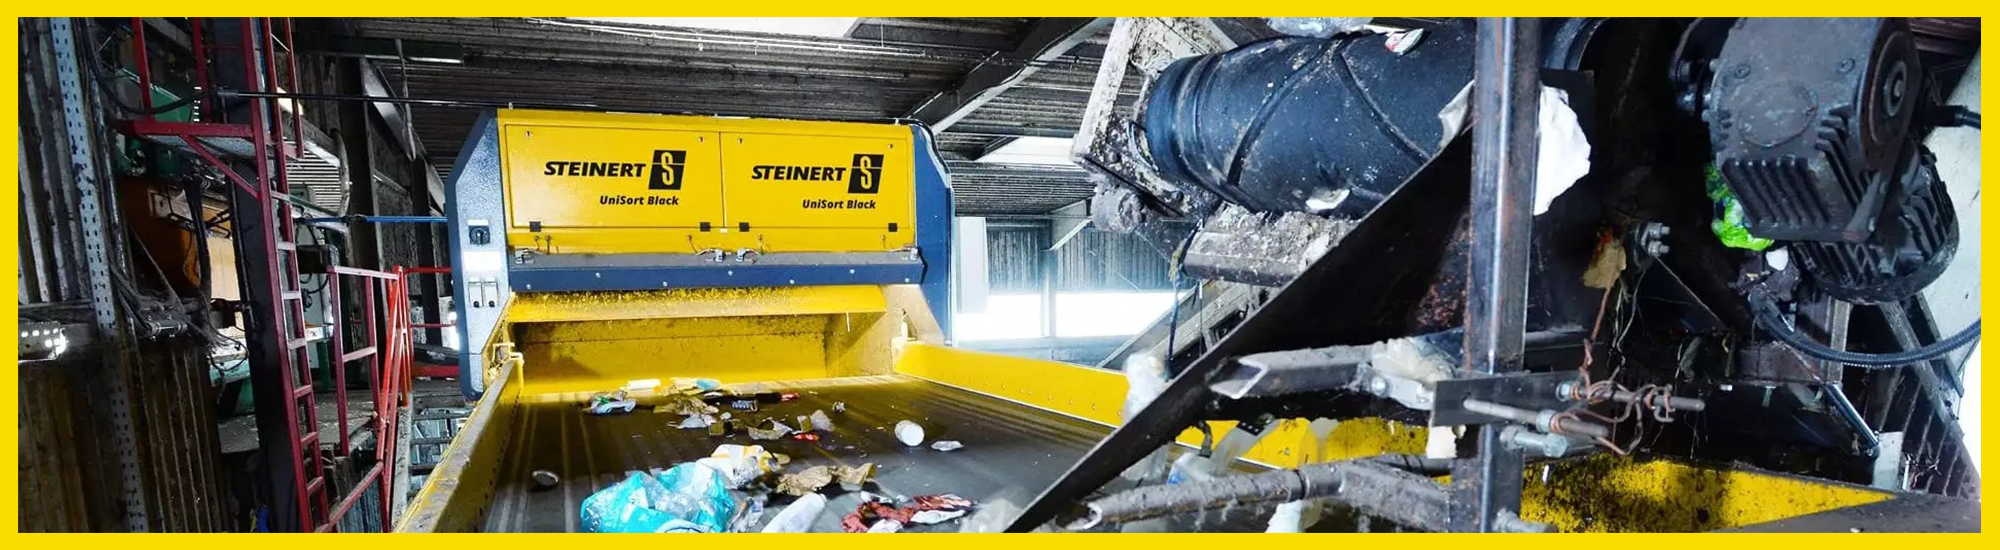 STEINERT UniSort GmbH